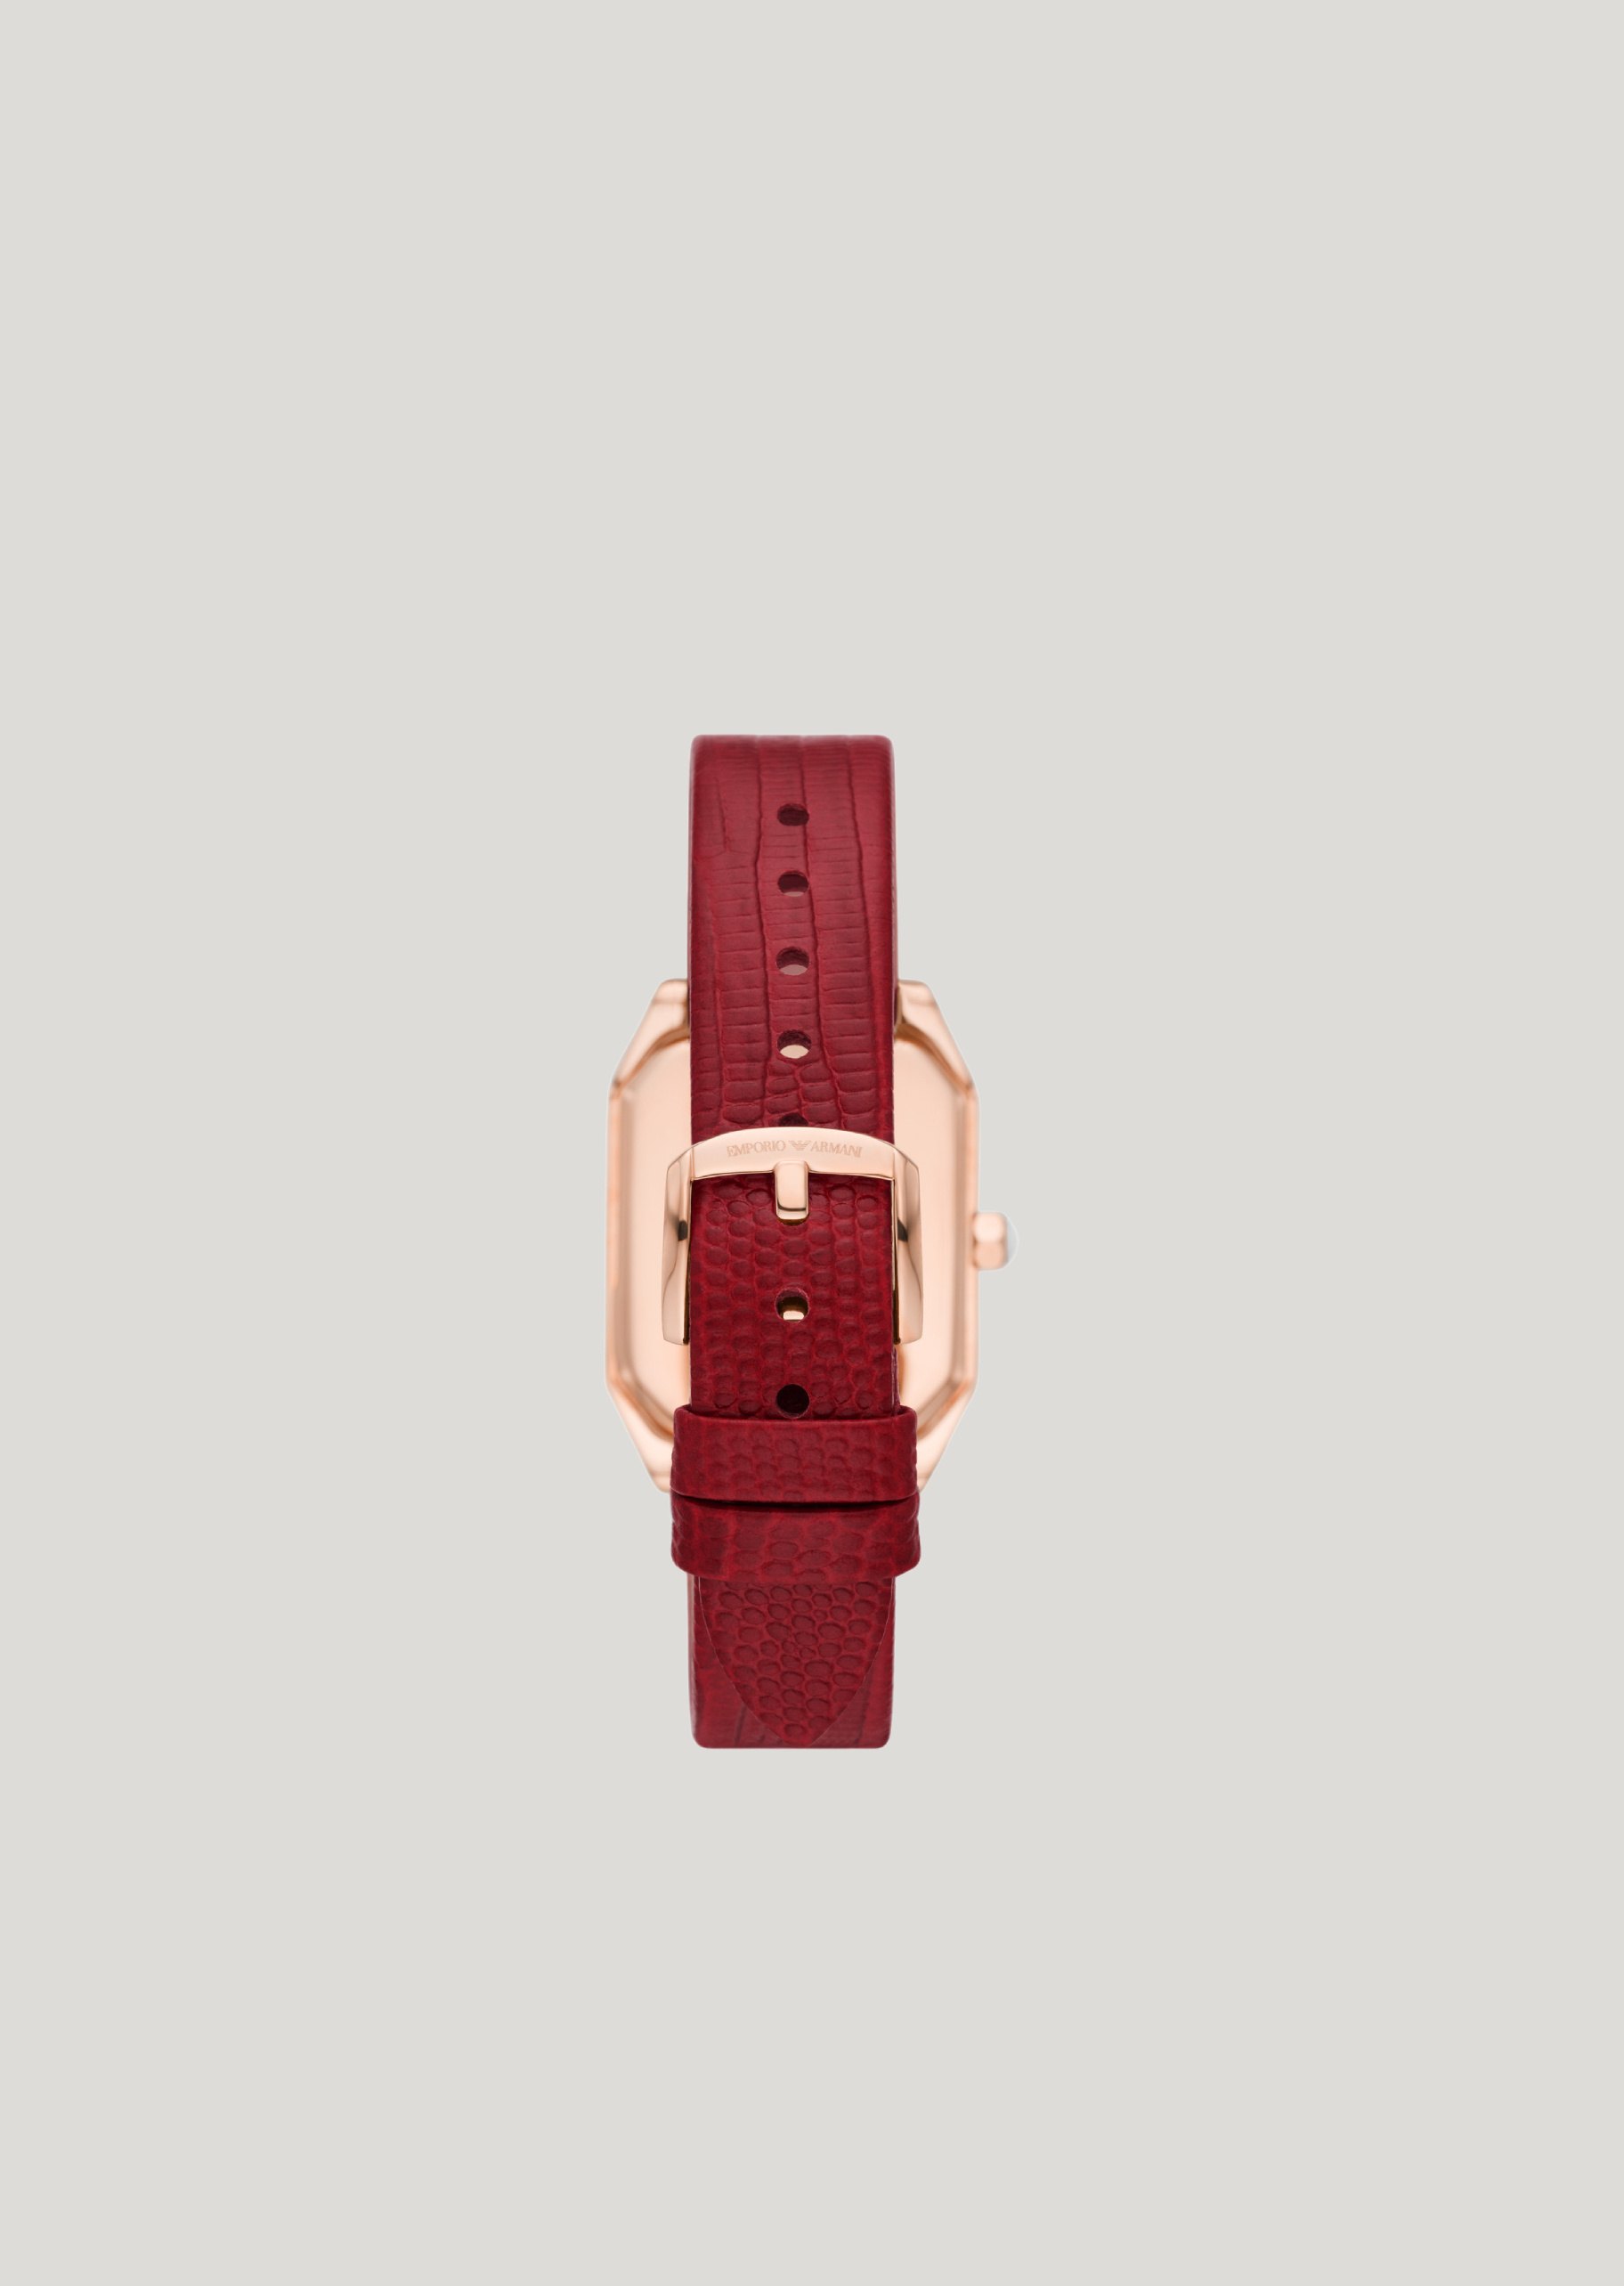 Emporio Armani 红色皮革石英腕表